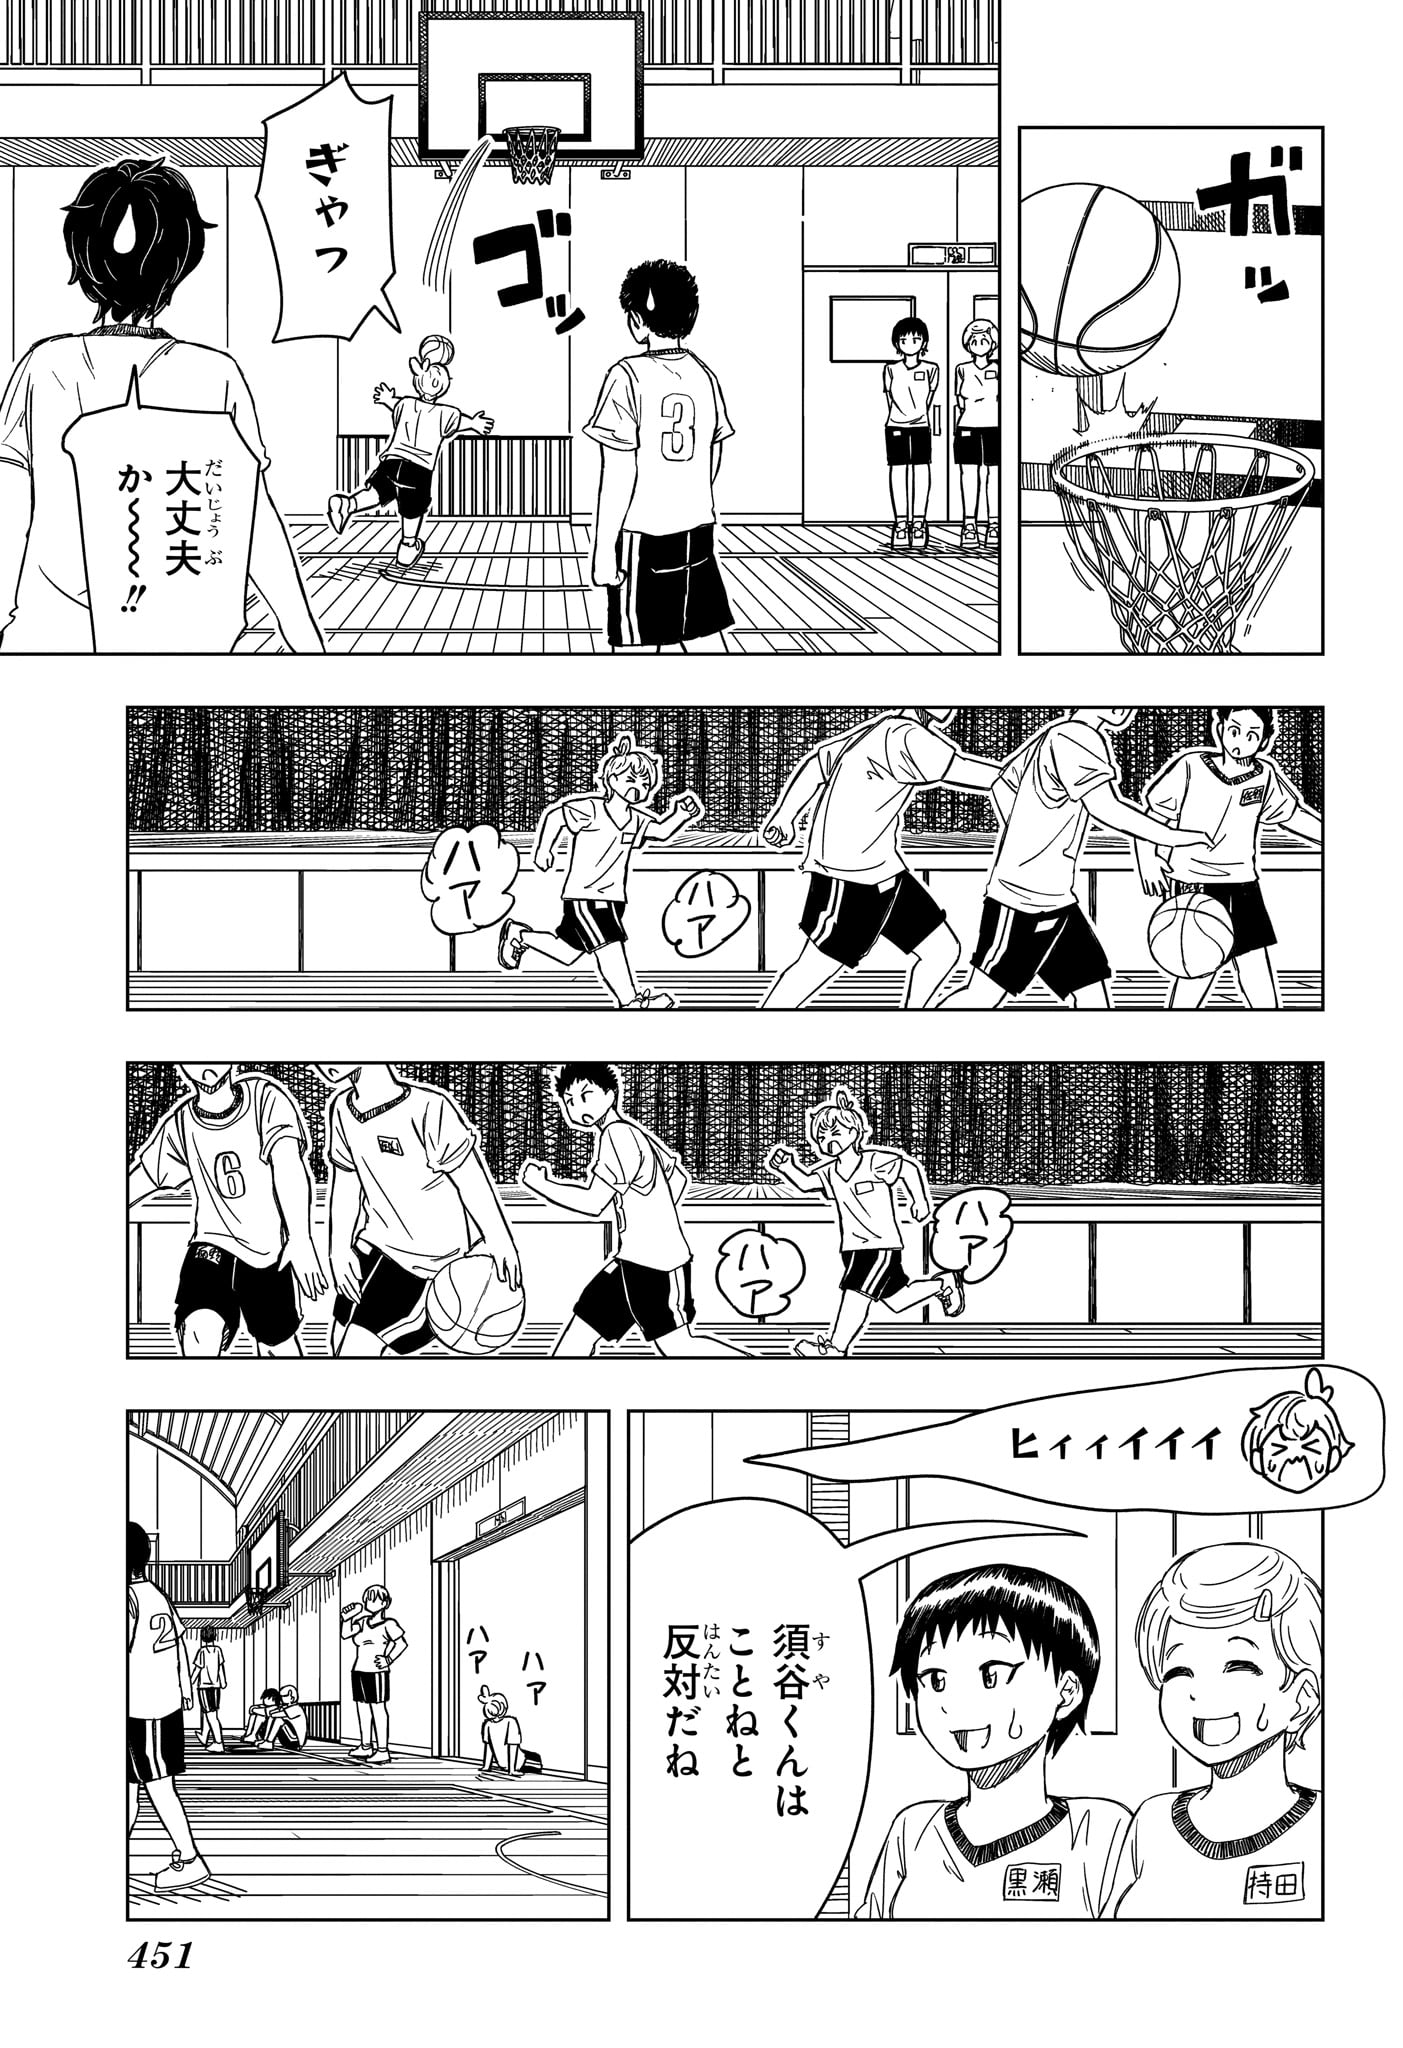 Saikuru Biyori - Chapter 11 - Page 7